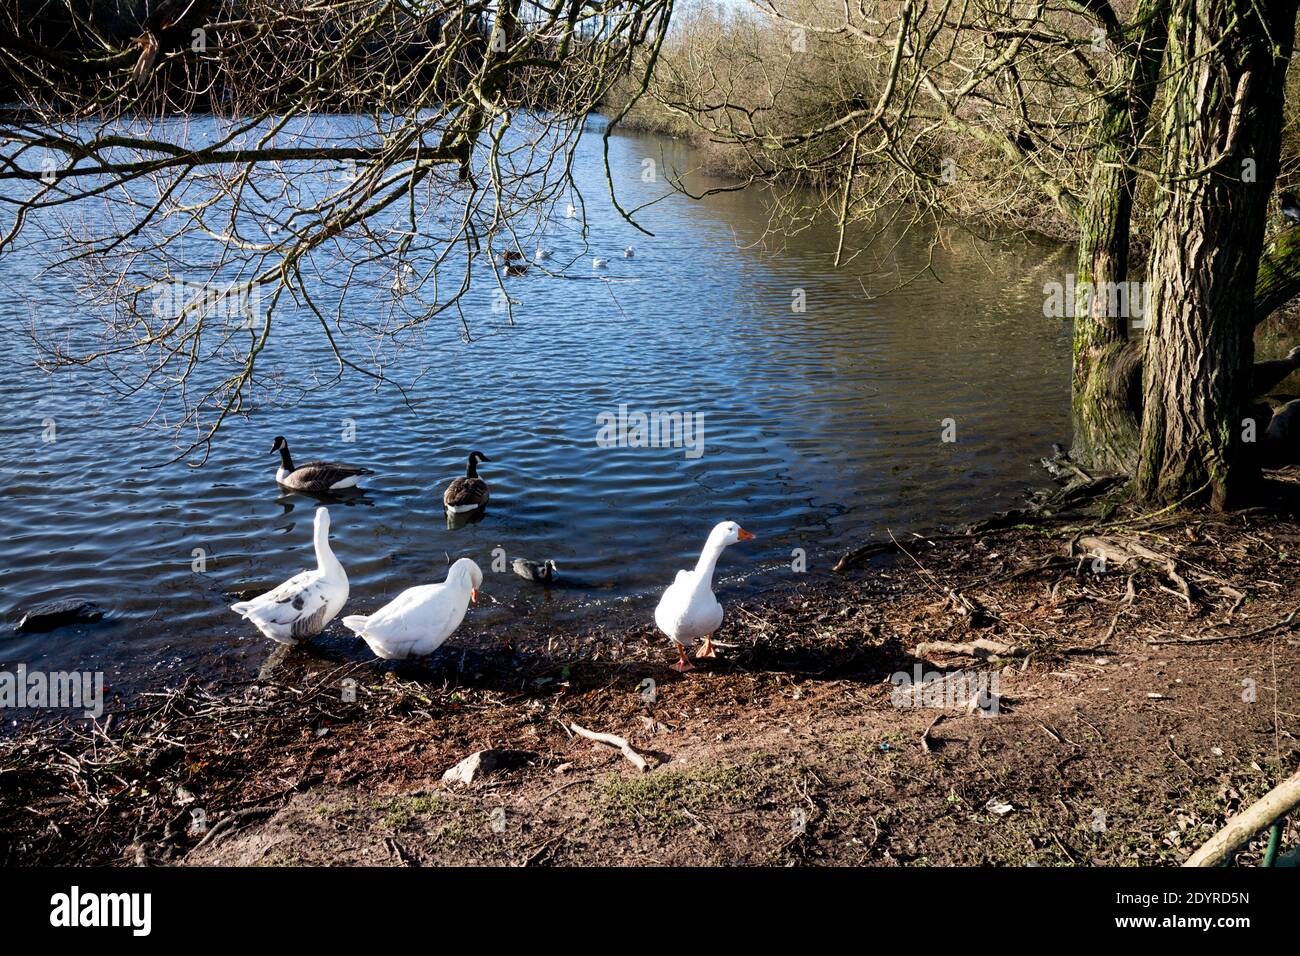 Le lac à Hillfield Park en hiver, Monkspath, Solihull, West Midlands, Royaume-Uni Banque D'Images